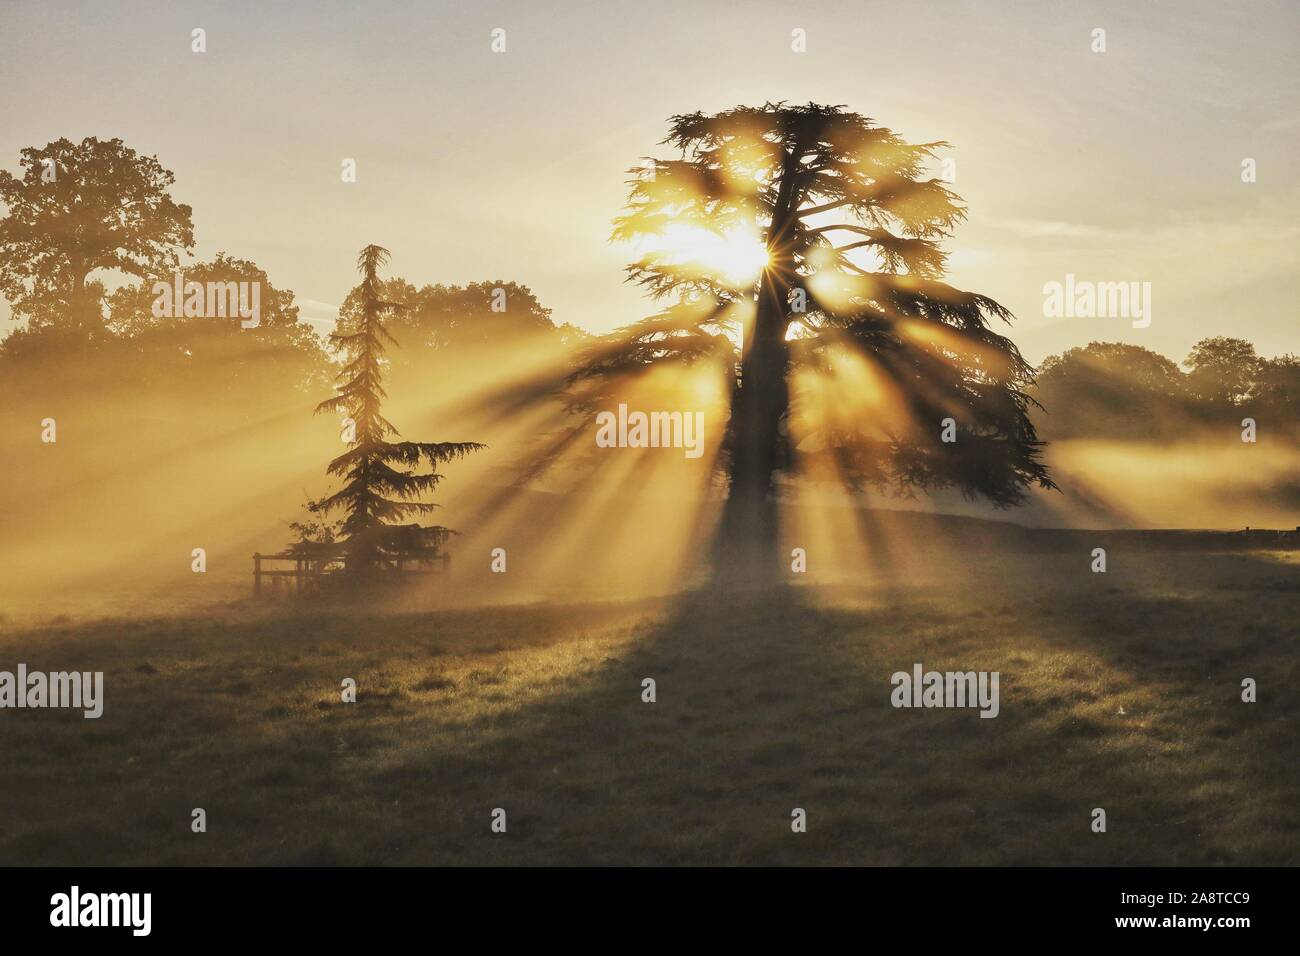 A morning sunrise woodland scene at Bushy Park, London England Stock Photo